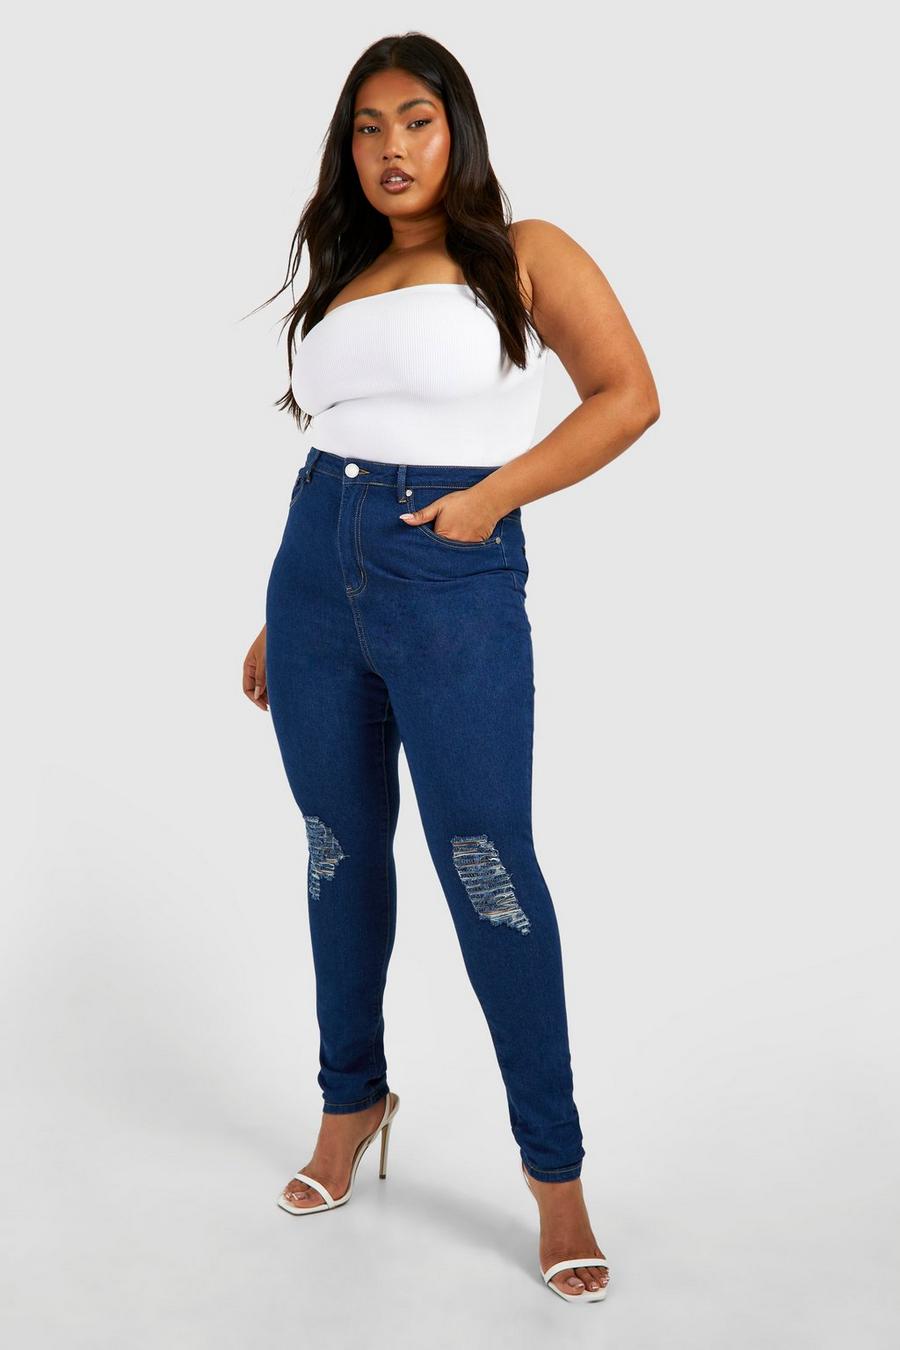 כחול ביניים azul סקיני ג'ינס high waist עם קרעים, מידות גדולות